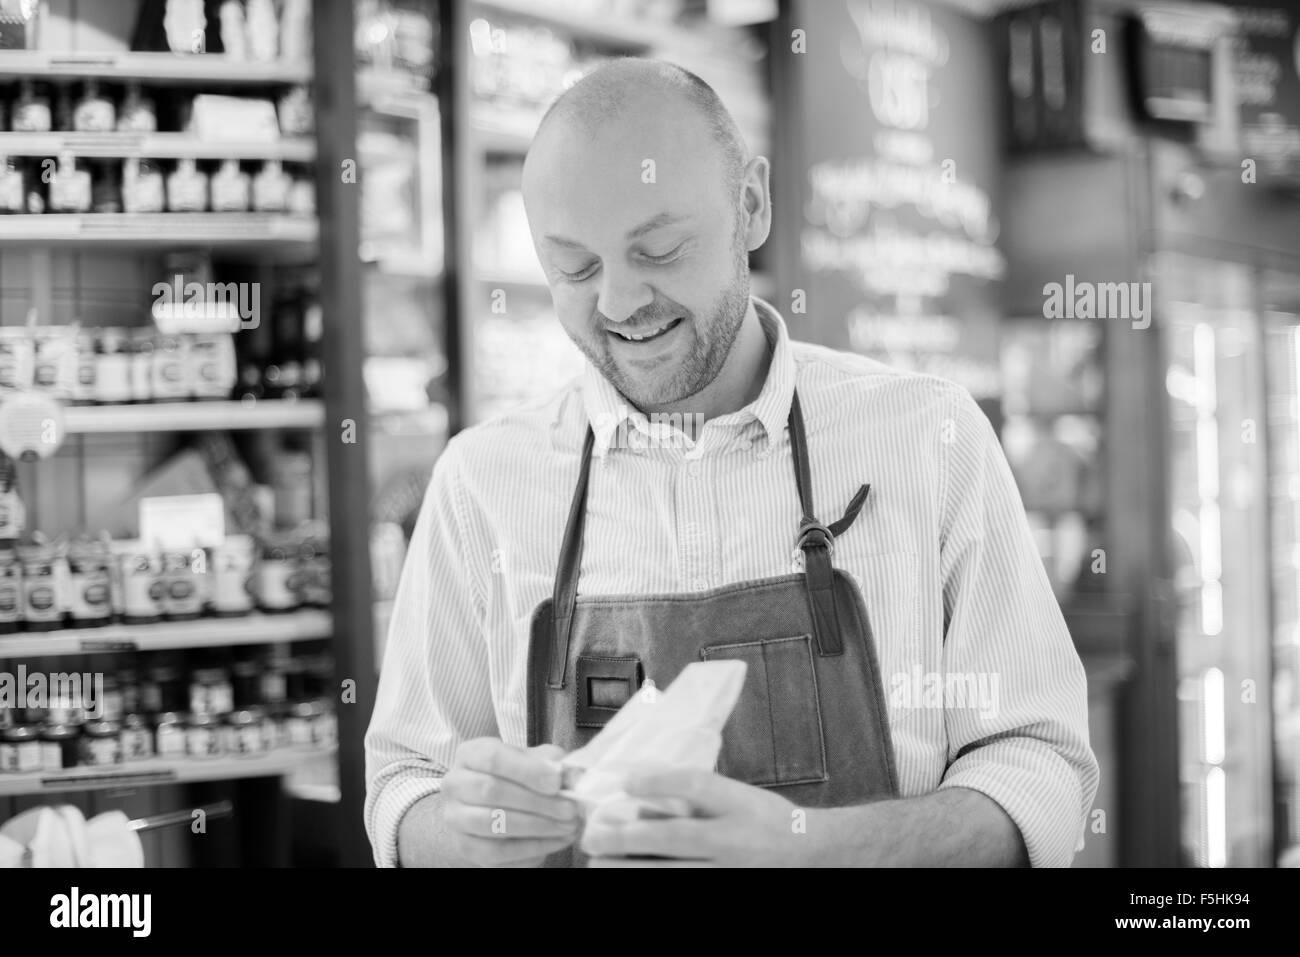 Porträt des Mannes in Käse, Hotorgshallen Saluhall, Uppland, Schweden stall auf Lebensmittelmarkt Stockfoto